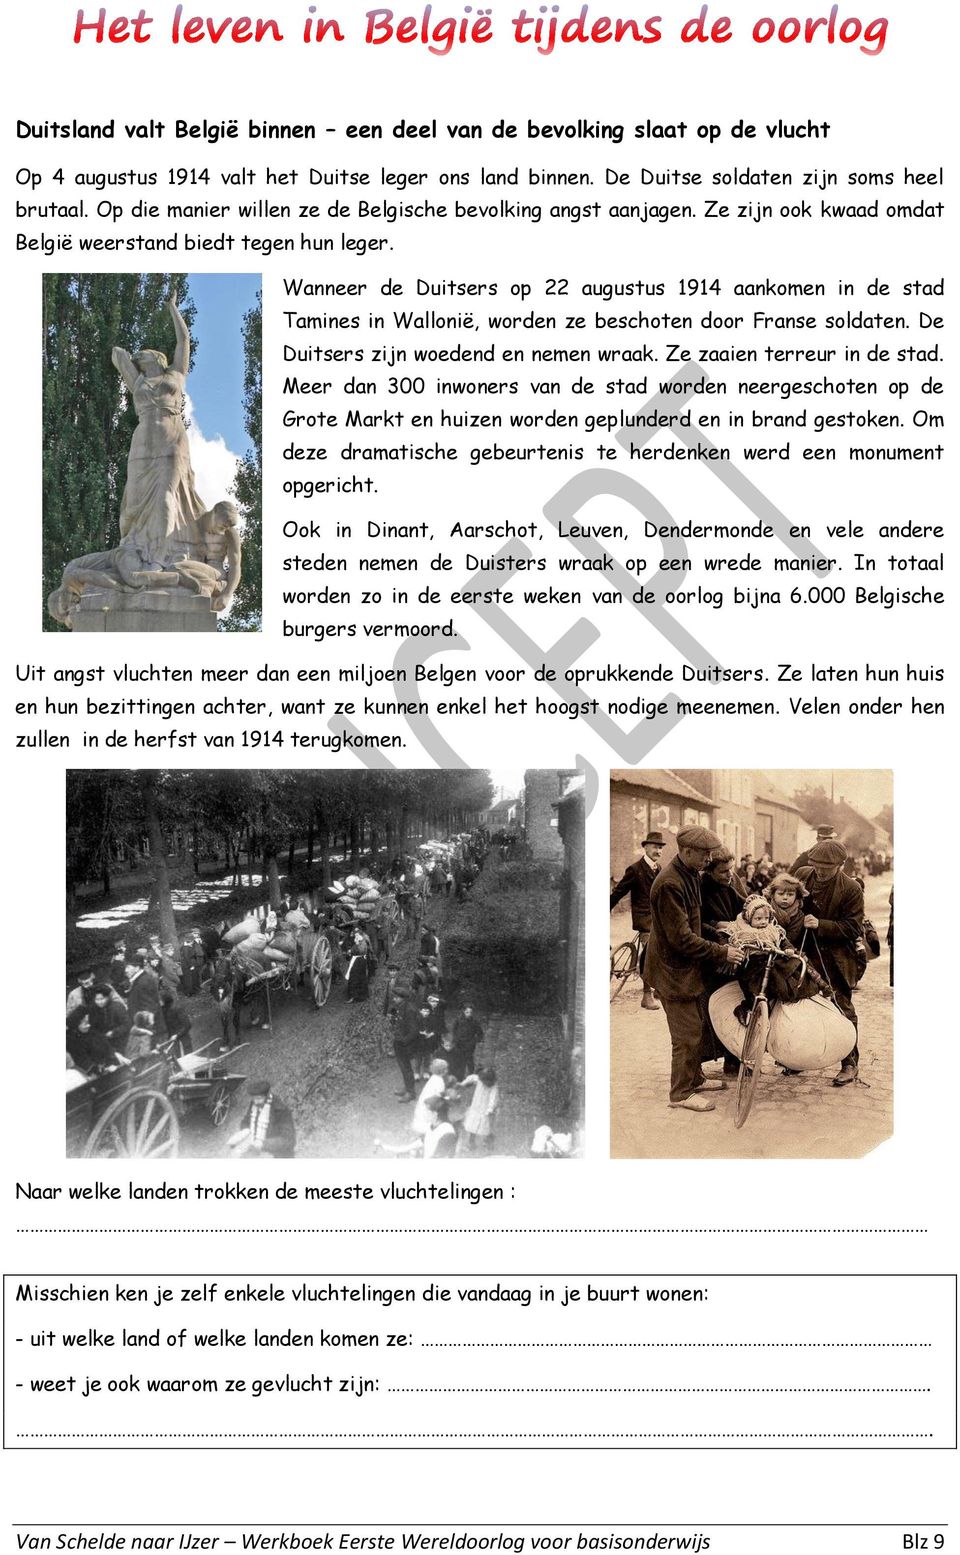 Wanneer de Duitsers op 22 augustus 1914 aankomen in de stad Tamines in Wallonië, worden ze beschoten door Franse soldaten. De Duitsers zijn woedend en nemen wraak. Ze zaaien terreur in de stad.